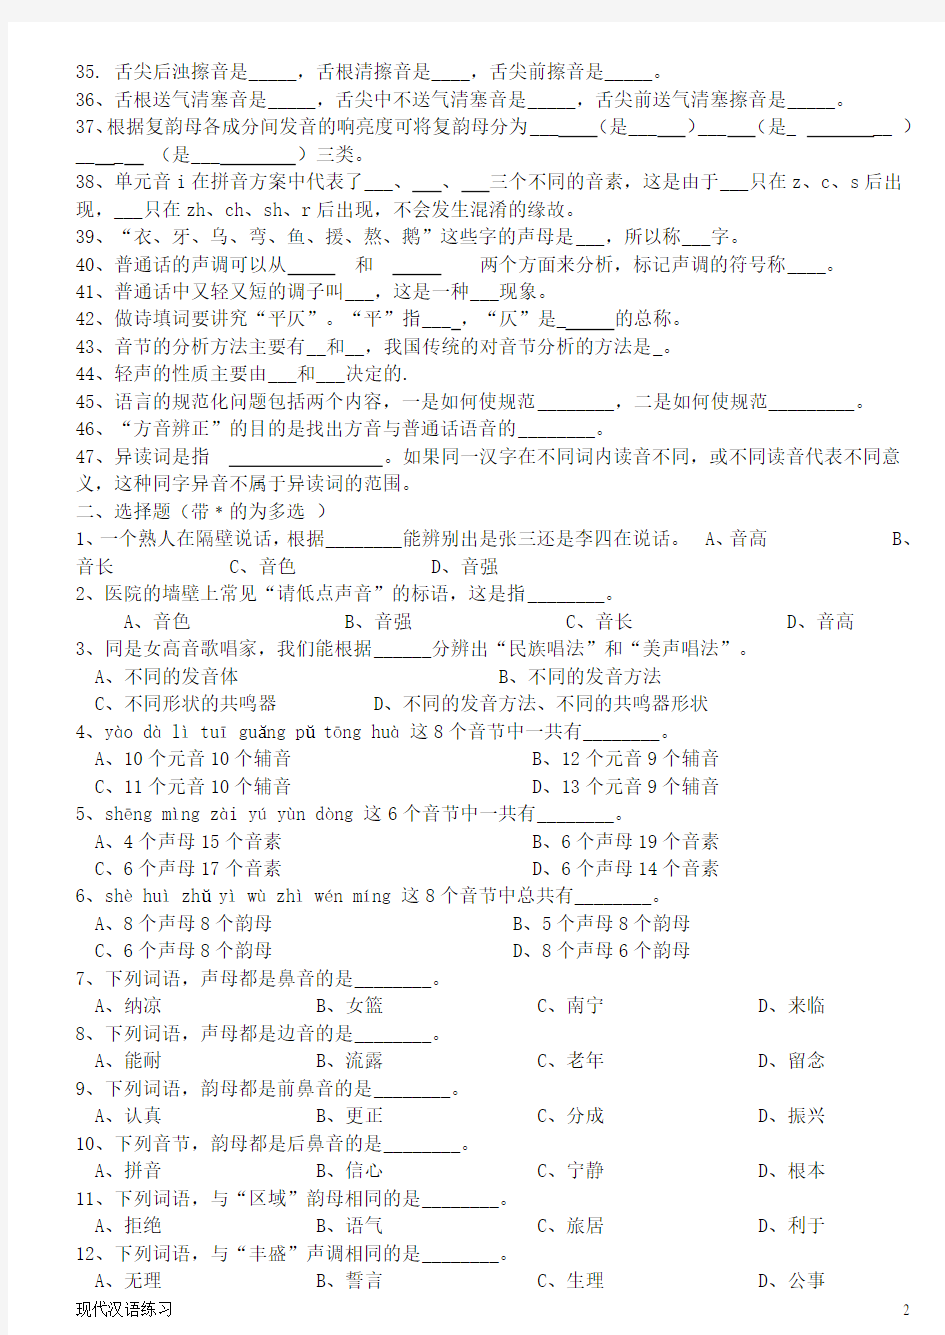 现代汉语练习 第2章  语音 (附答案)